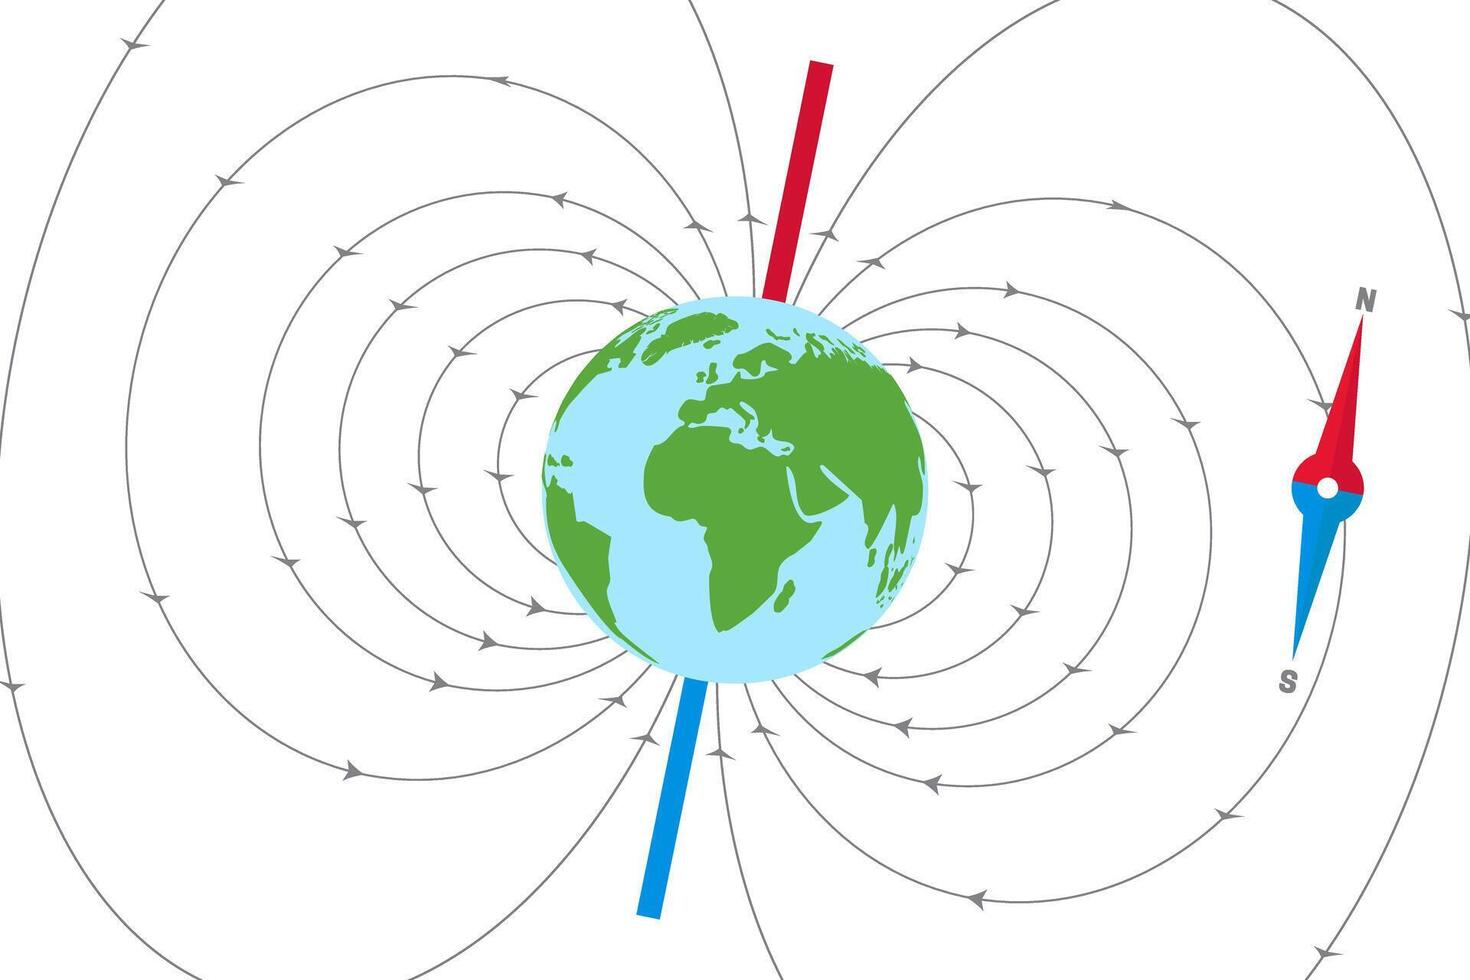 jord magnetisk fält och magnetisk axel illustration vektor